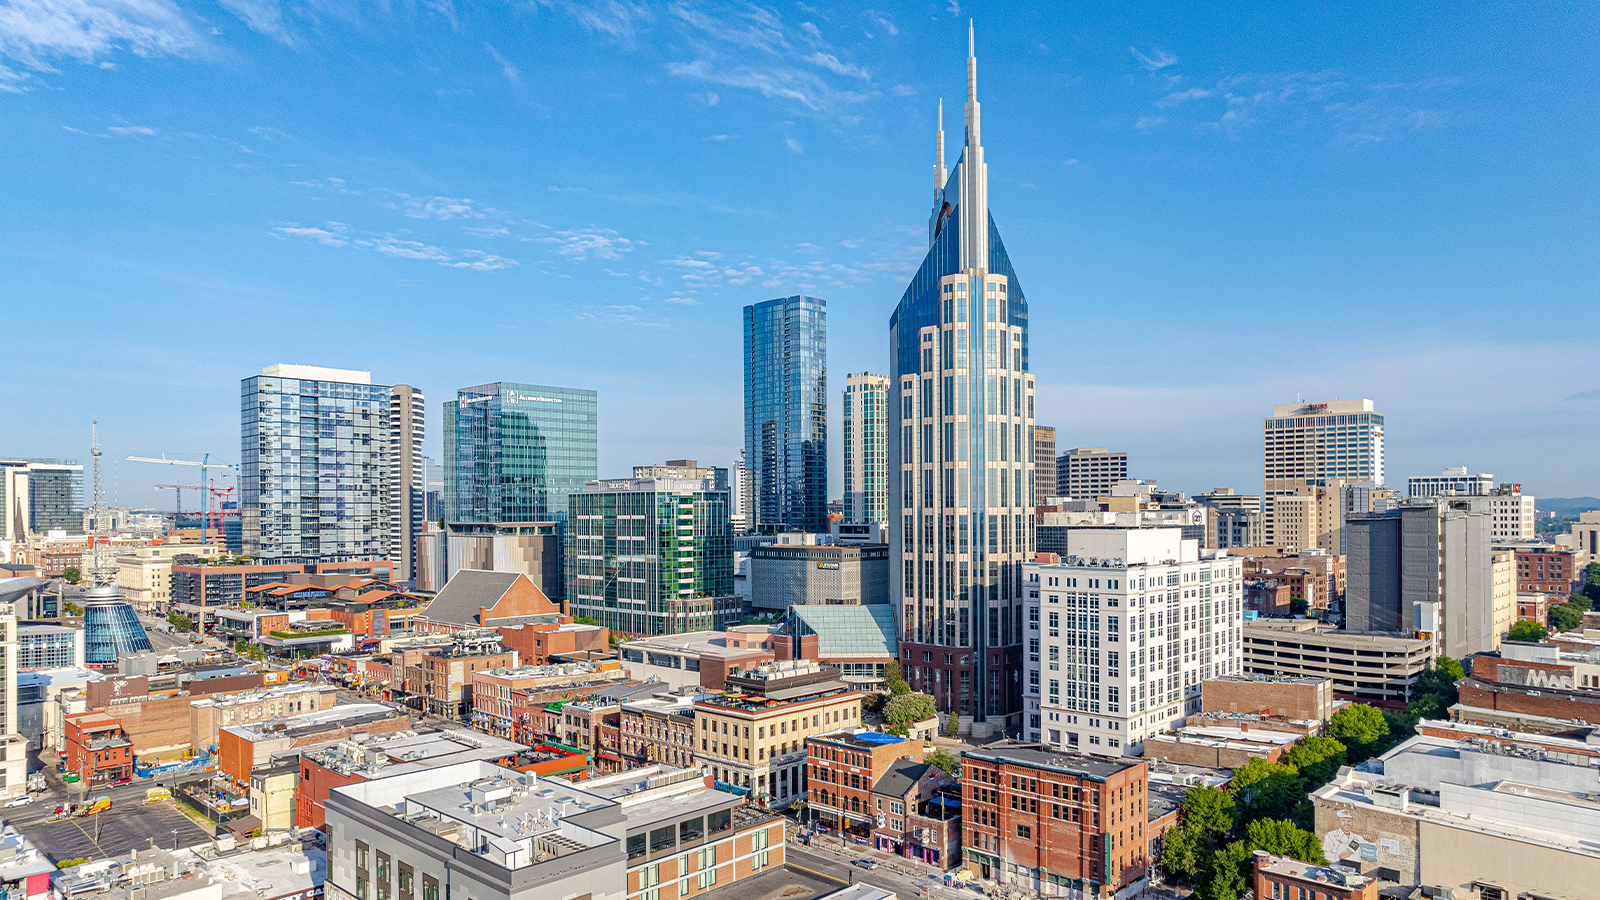 Nashville skyline under blue skies.